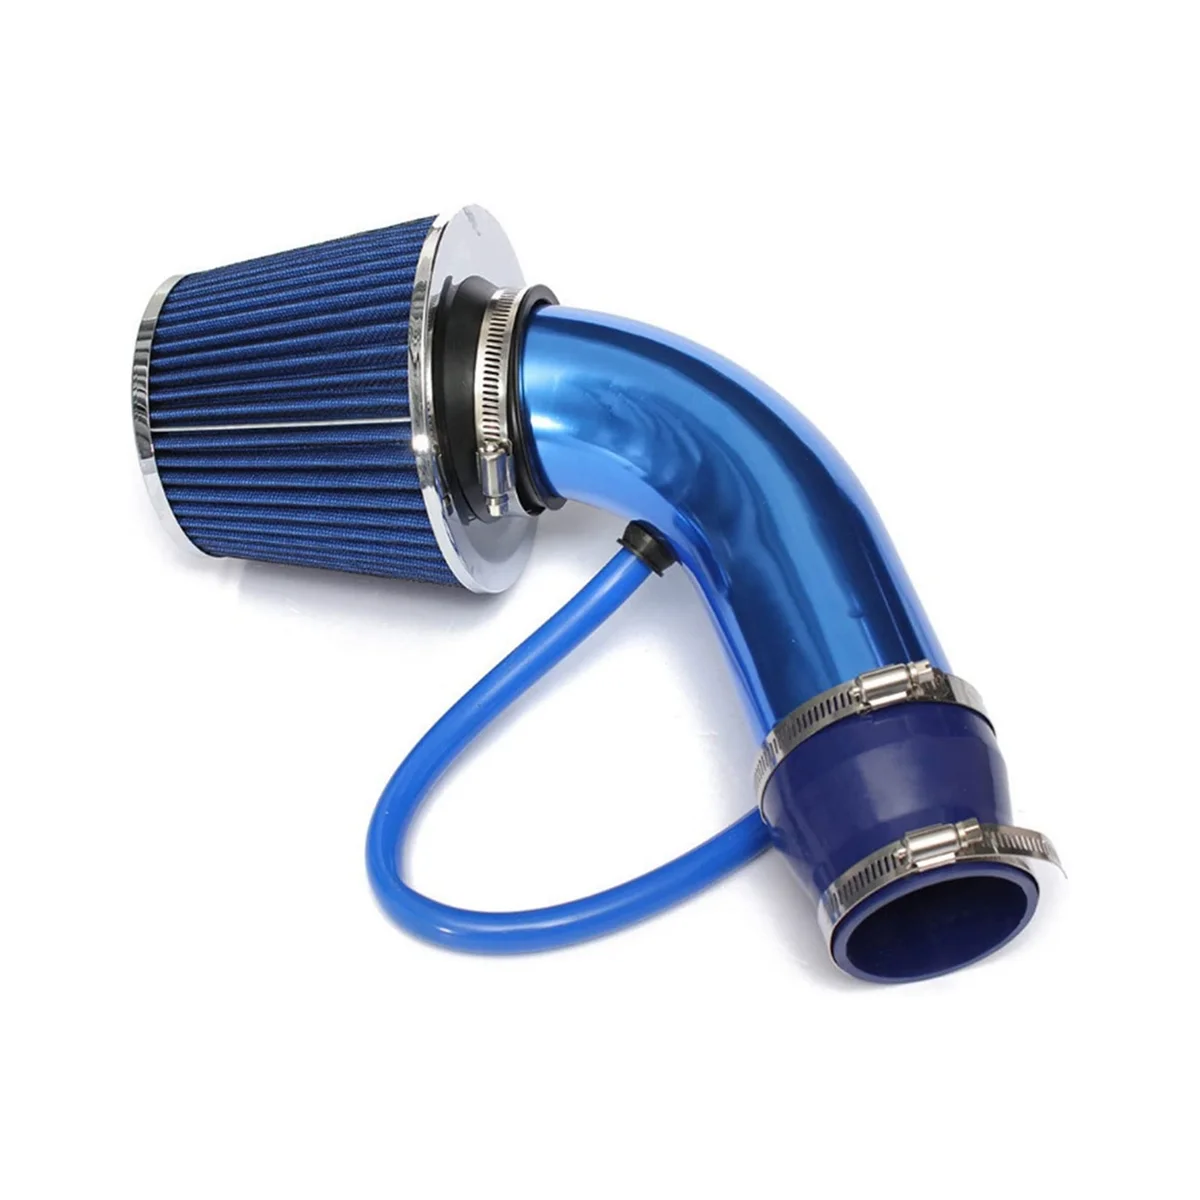 

Универсальный автомобильный Гоночный комплект для впуска холодного воздуха 3-дюймовая трубка Алюминиевый автомобильный фильтр индукционный низкий шланг и зажим комплекты, синий